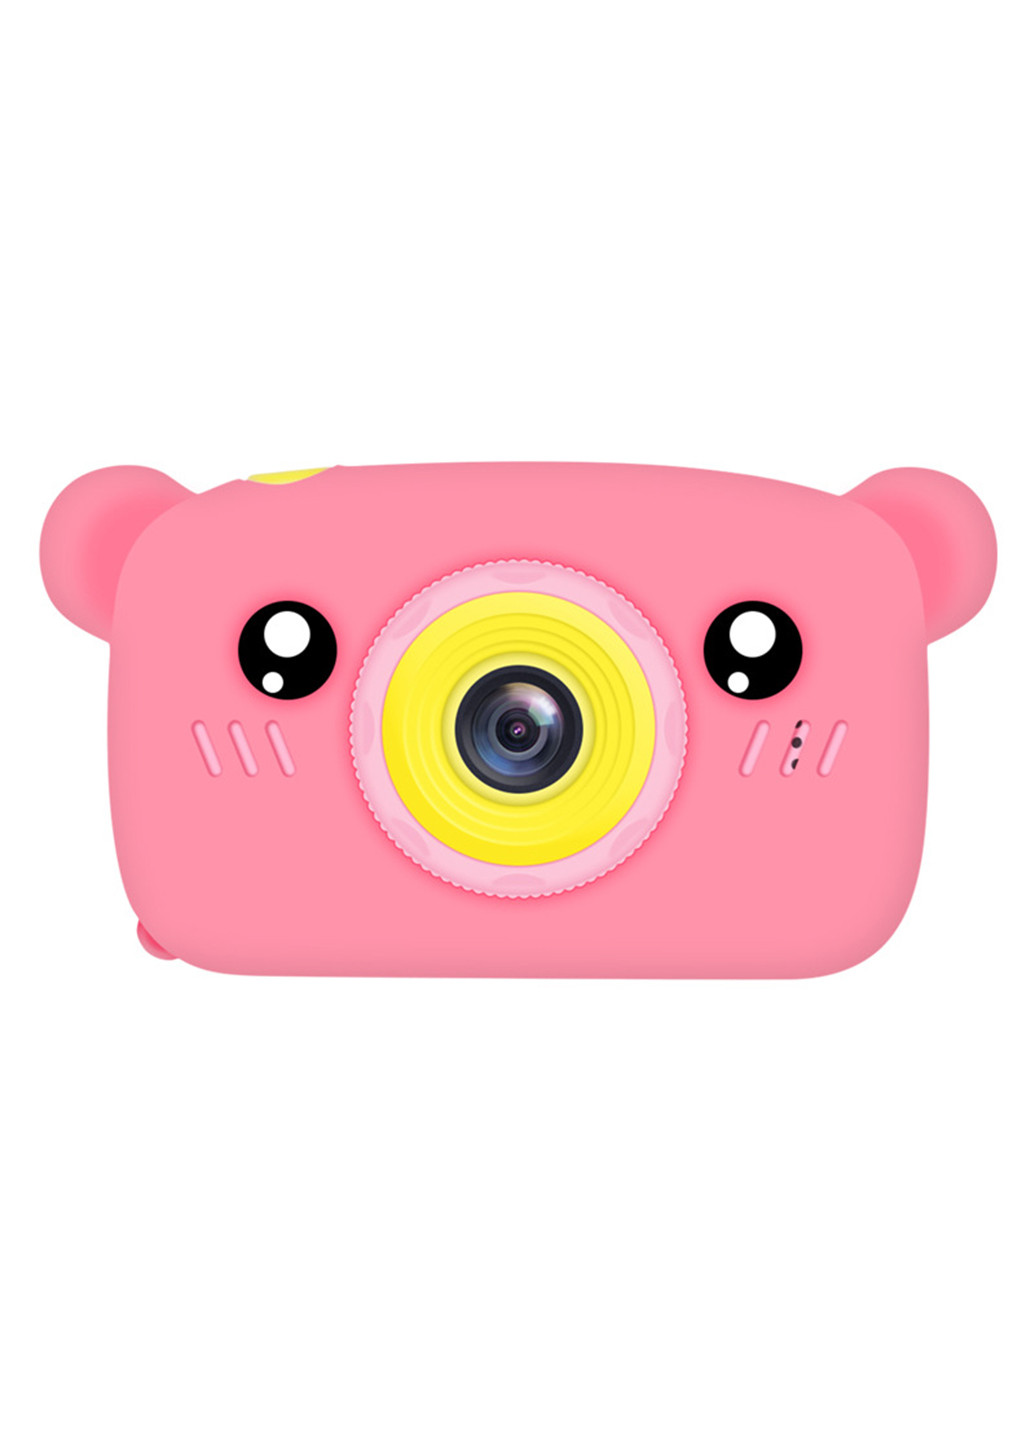 Цифровой детский фотоаппарат KVR-005 Bear розовый () XoKo kvr-005-pn (171738967)